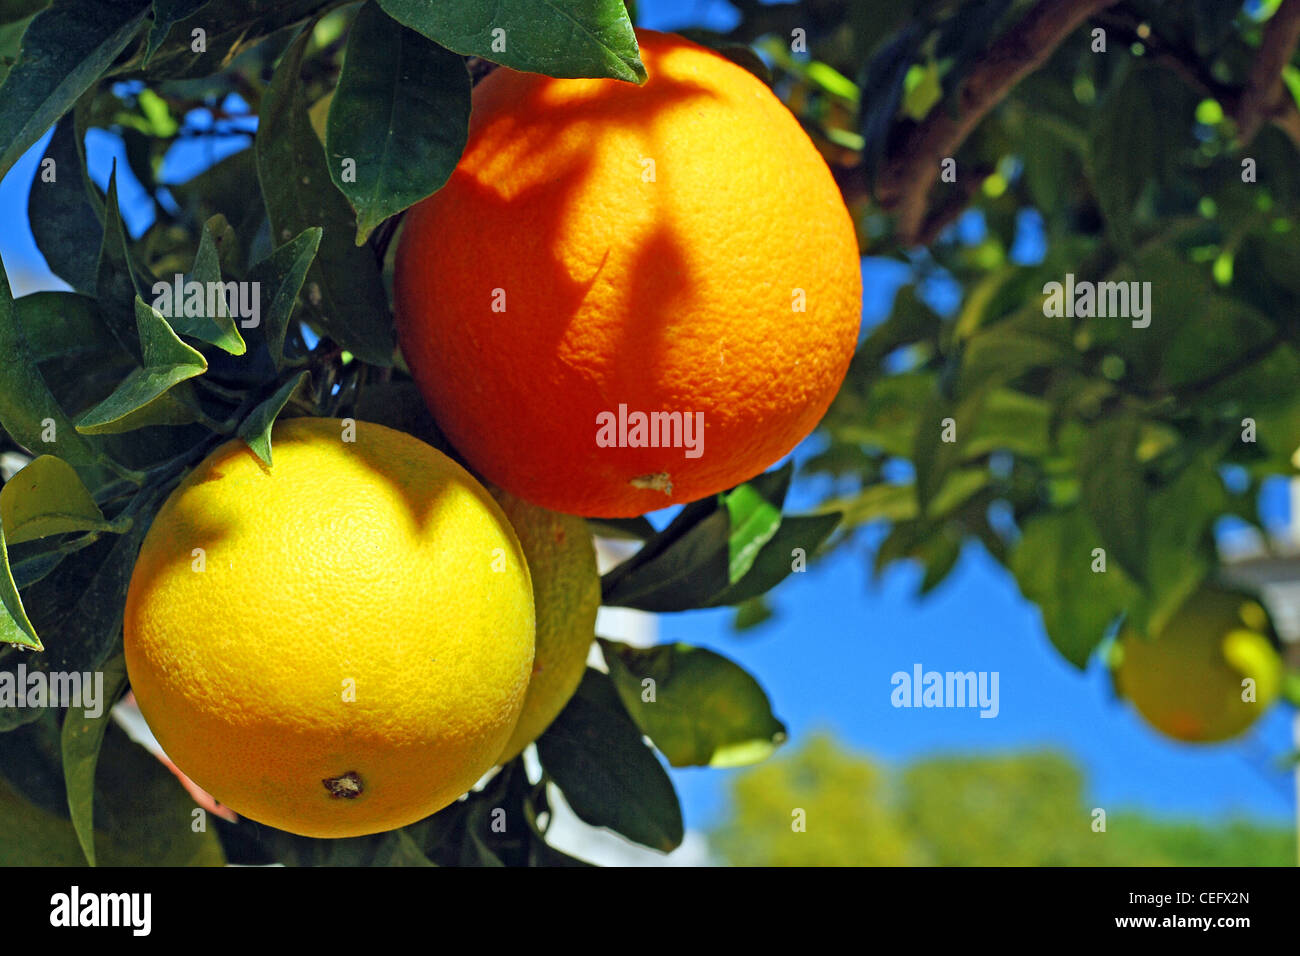 Two oranges on an orange tree Stock Photo